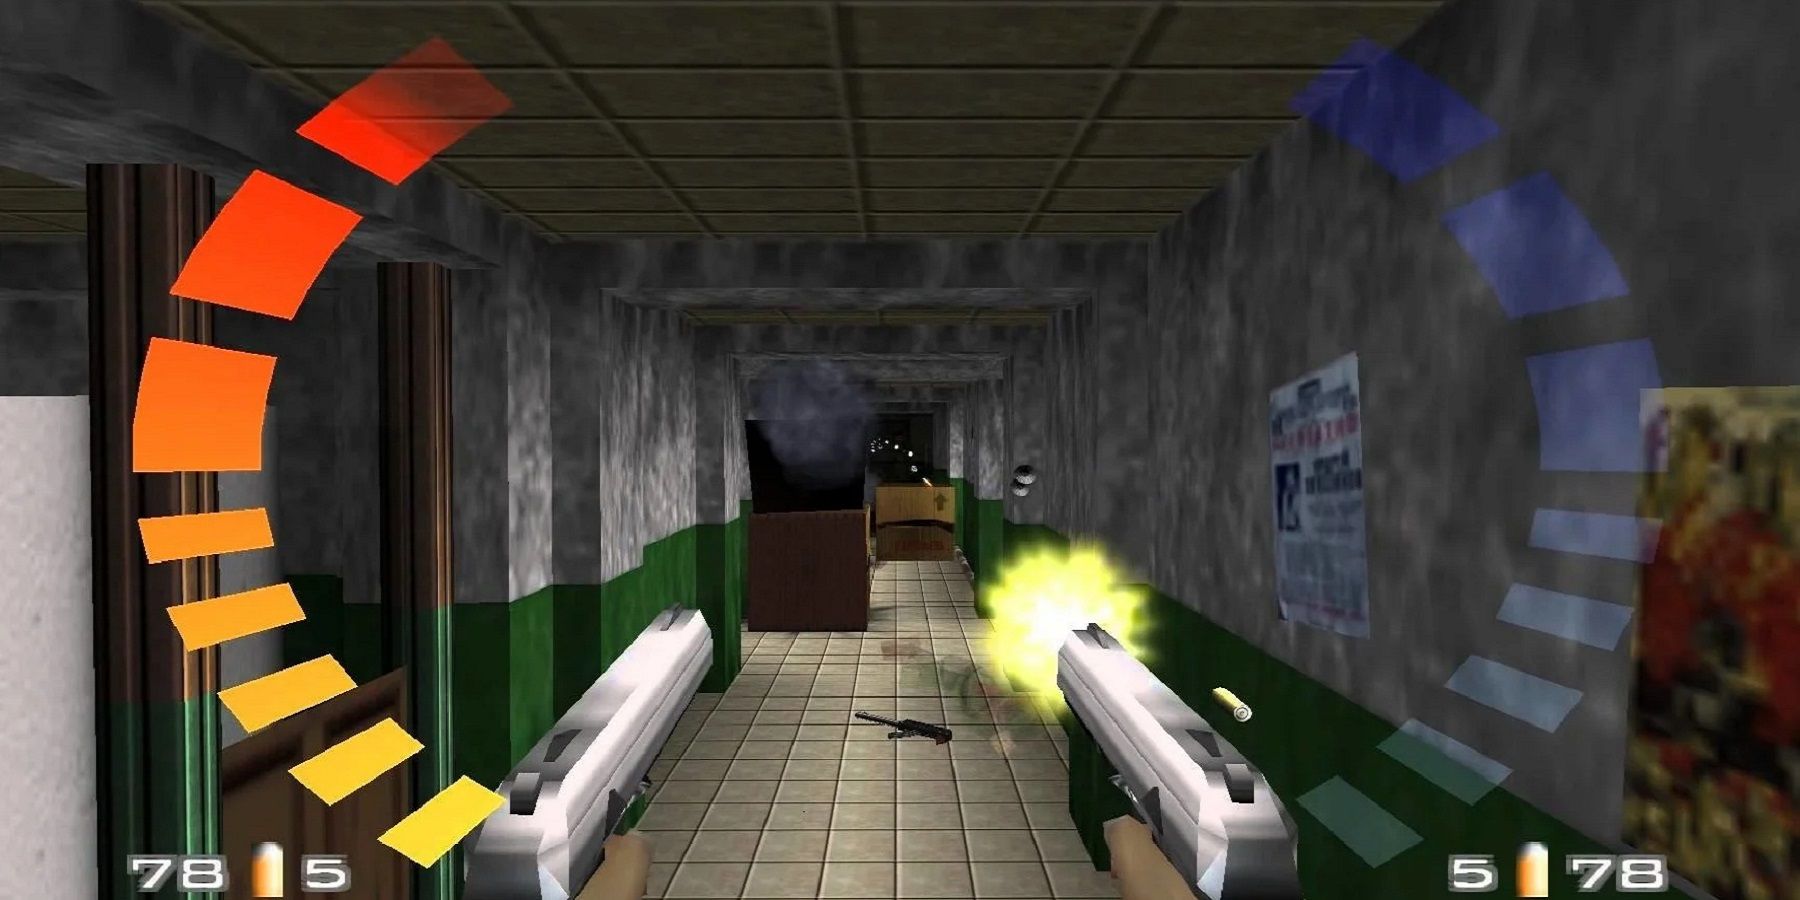 Изображение из GoldenEye 007 на Nintendo 64, показывающее, как Джеймс Бонд стреляет из пистолета по ящикам со взрывчаткой.